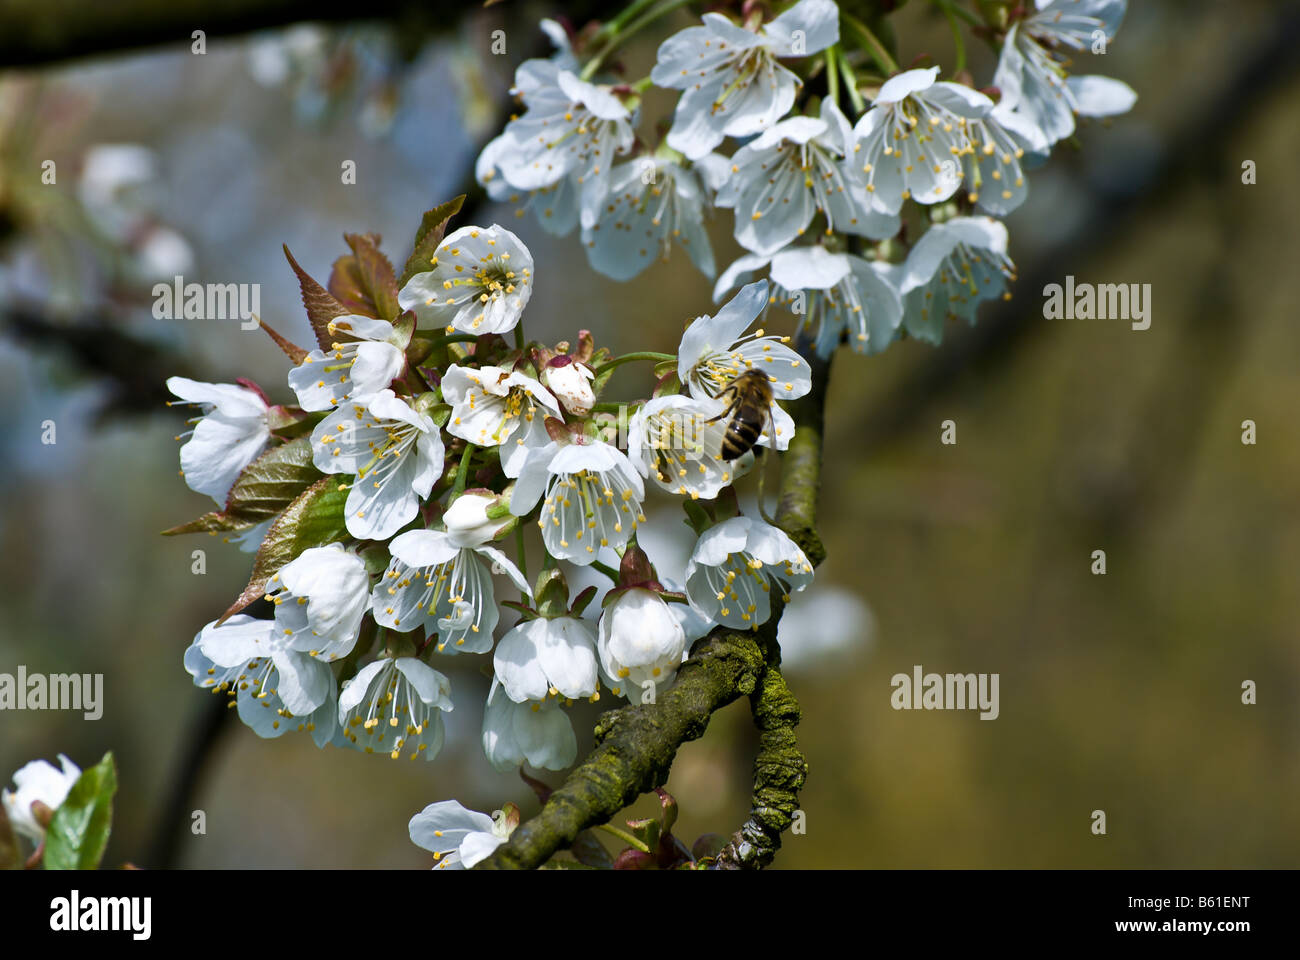 Prunus avium Rosaceae Tree, Cherry blossoms Stock Photo